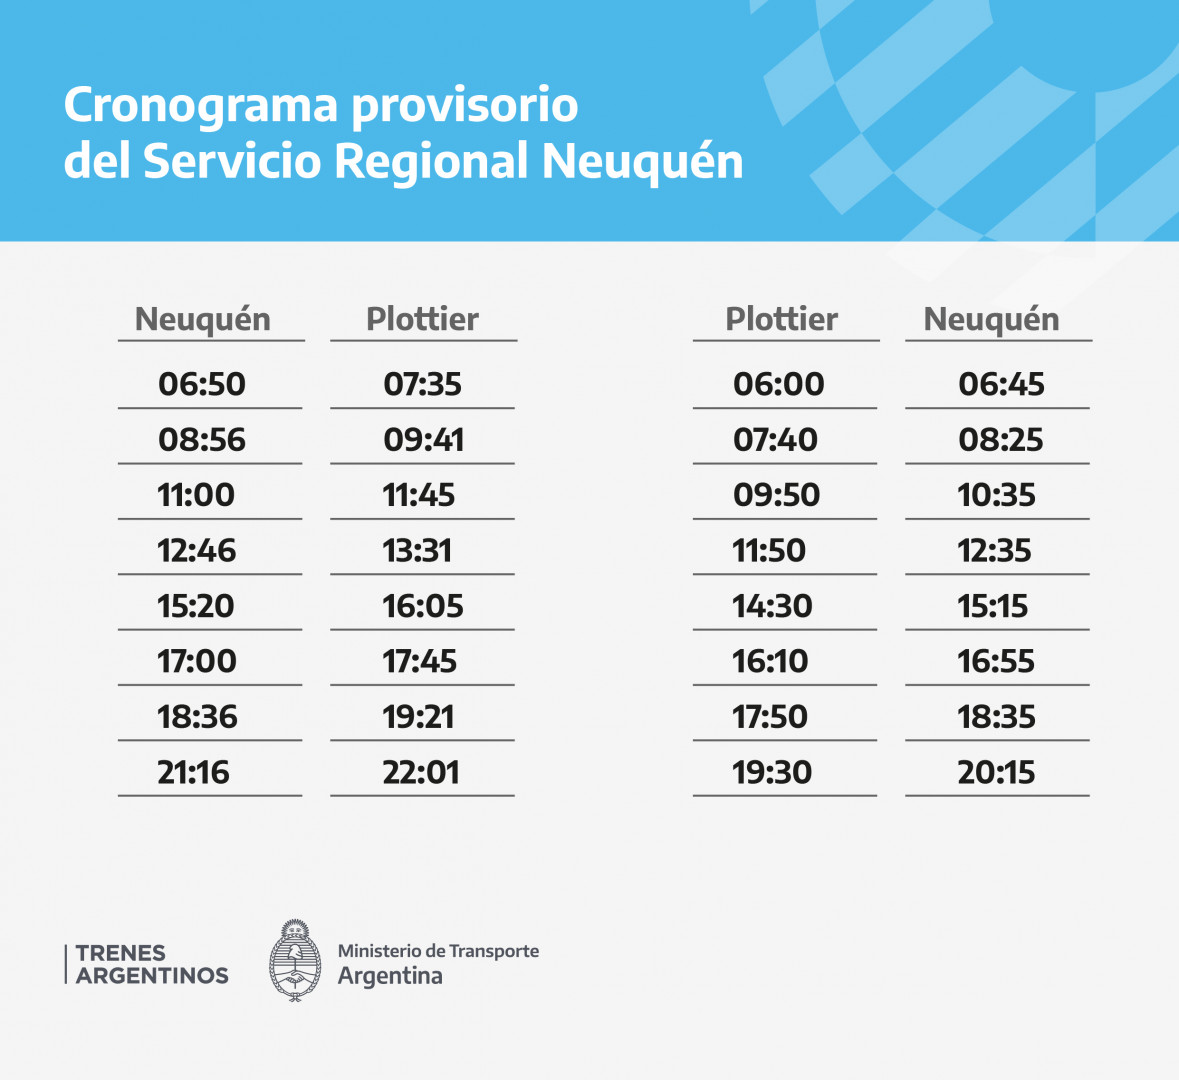  Servicio Regional Neuquén / Tren del ValleEl servicio circula con recorrido limitado entre Neuquén y Plottier, con un cronograma provisorio debido a un incidente ajeno a Trenes Argentinos.